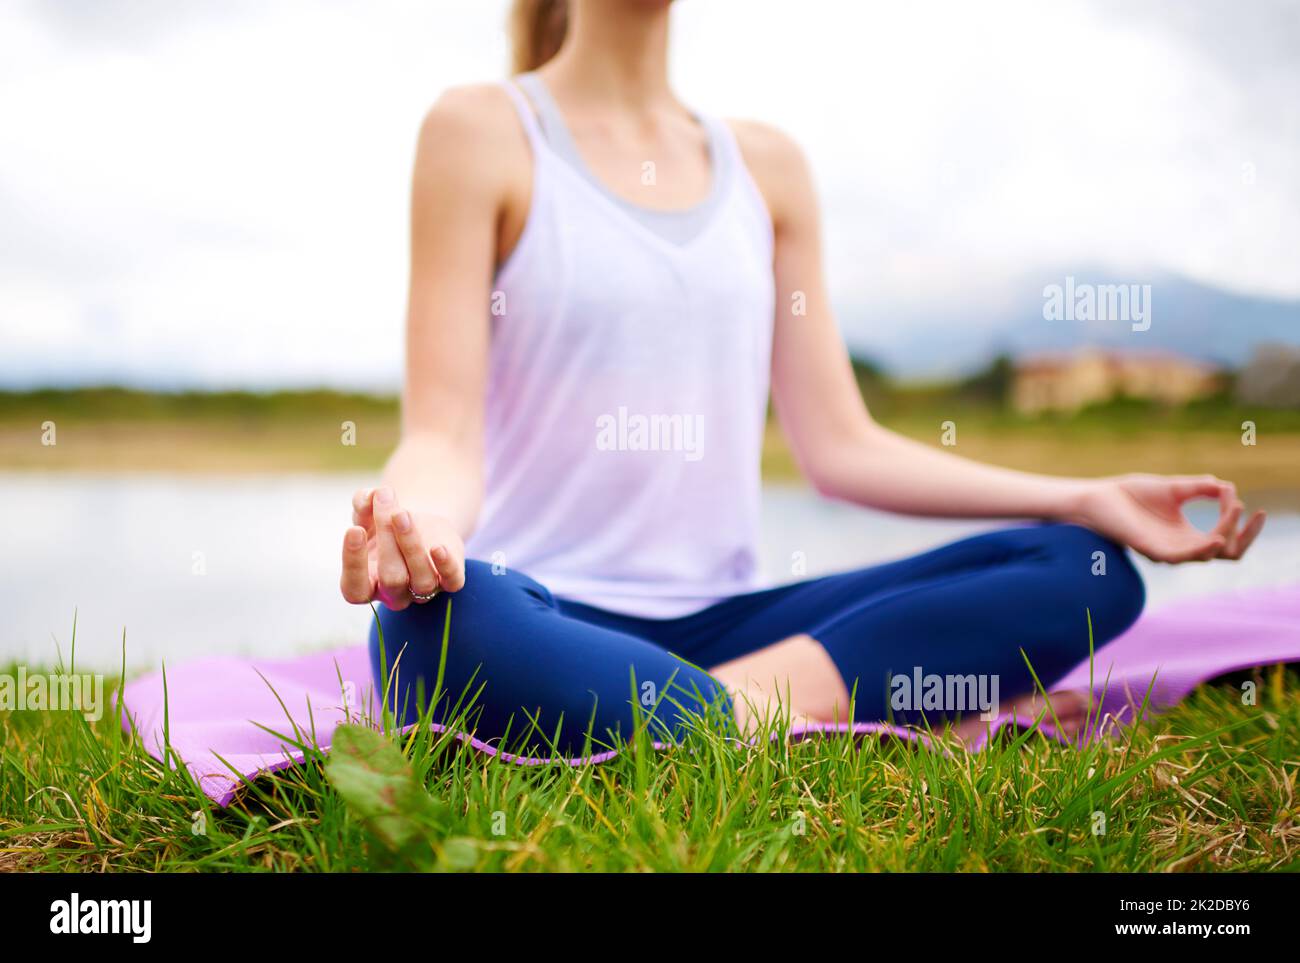 Das Leben ist ein Gleichgewicht zwischen Festhalten und Loslassen. Aufnahme einer jungen Frau, die im Freien Yoga macht. Stockfoto